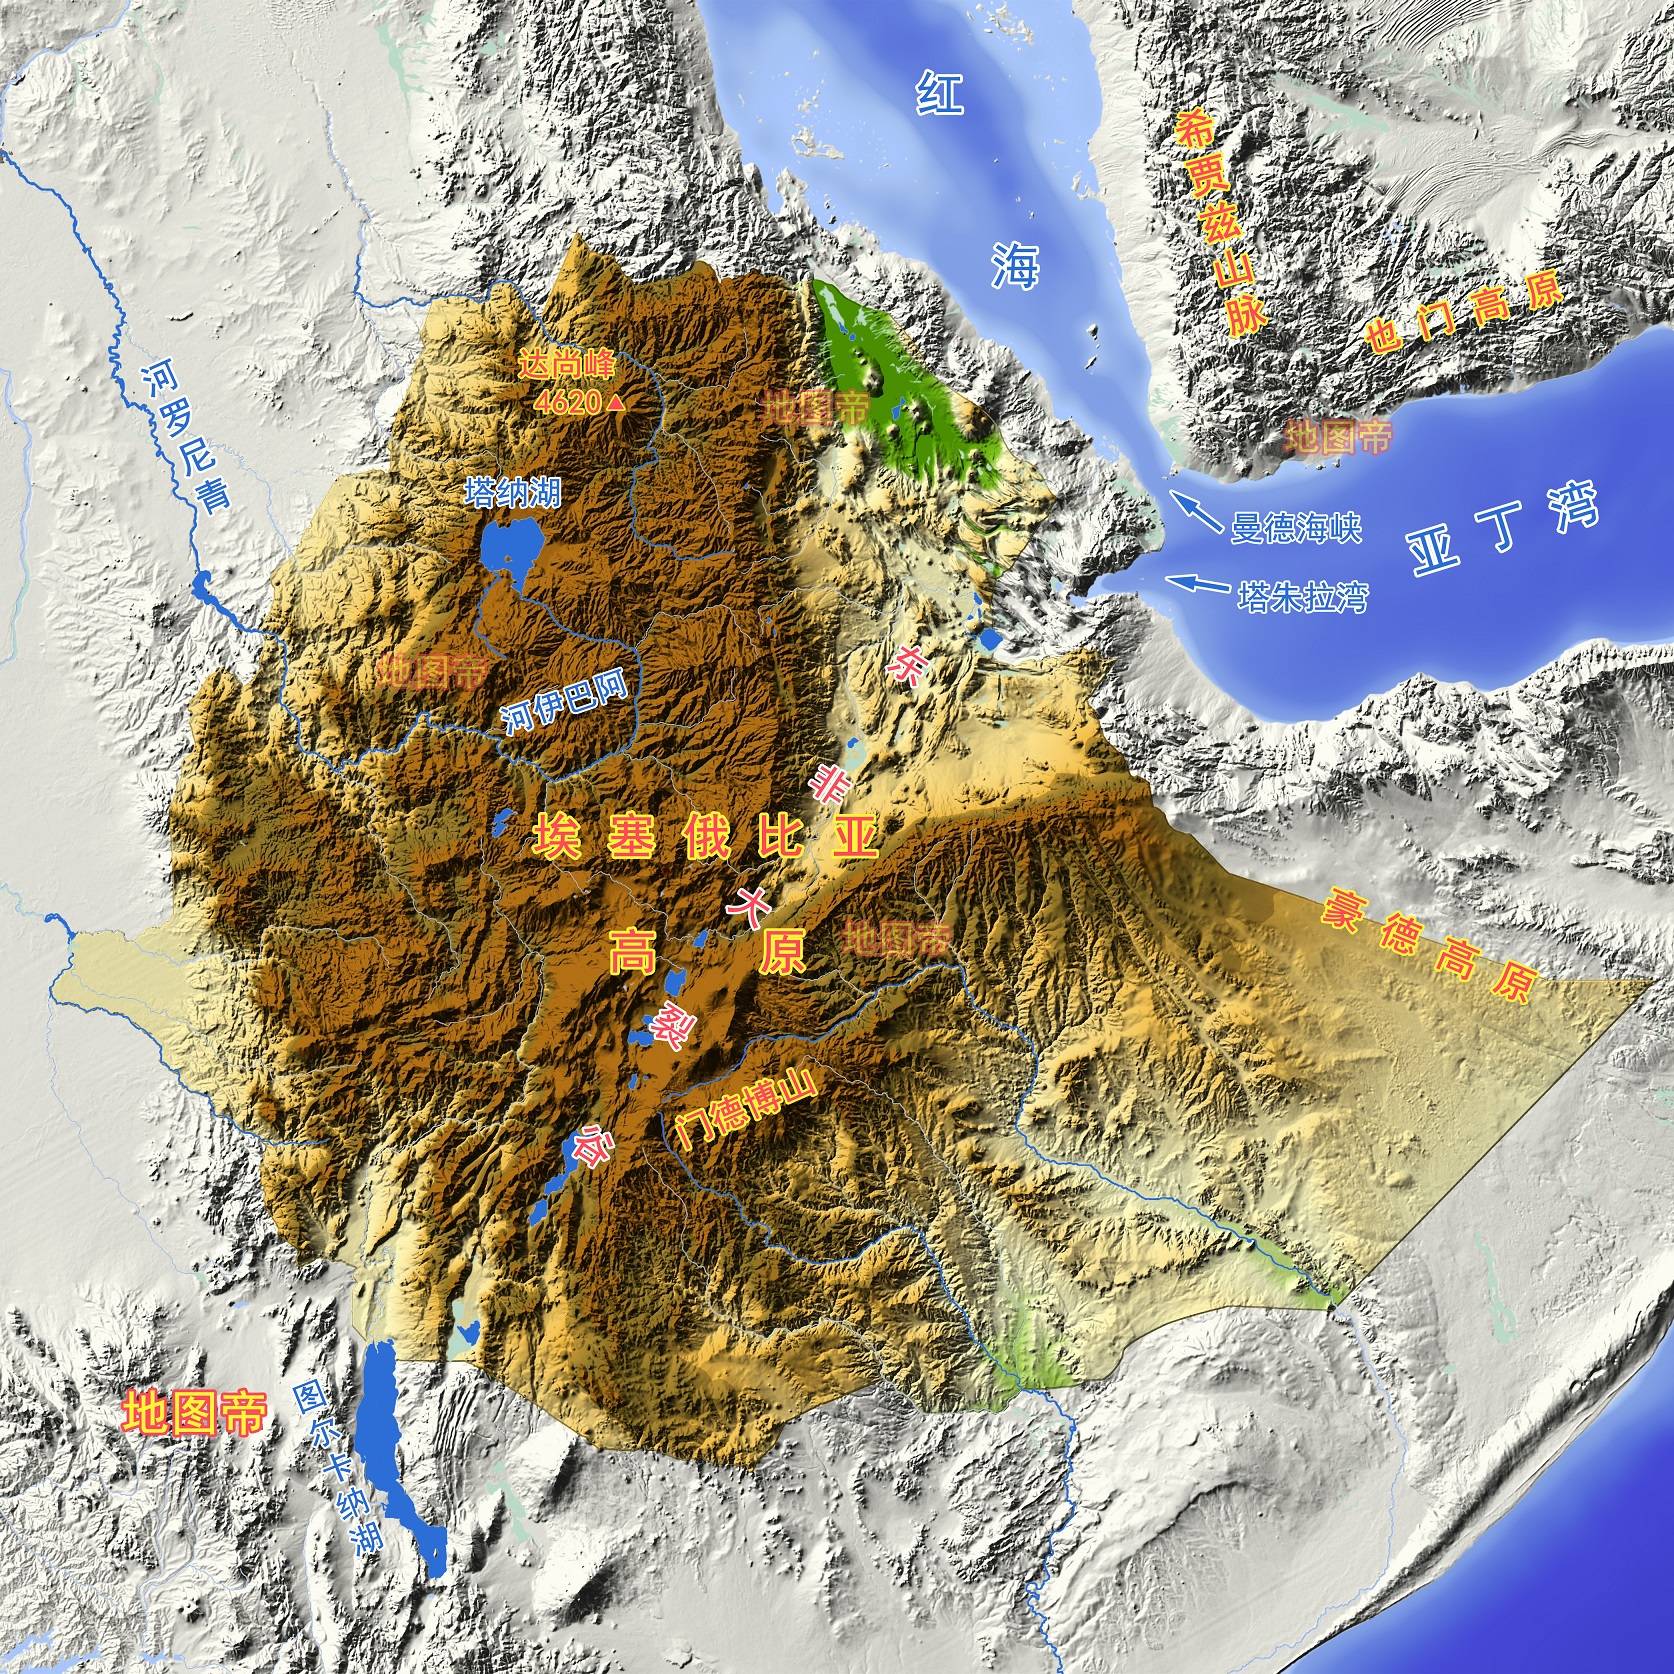 原创埃塞俄比亚原有1350公里海岸线,为何成了内陆国?